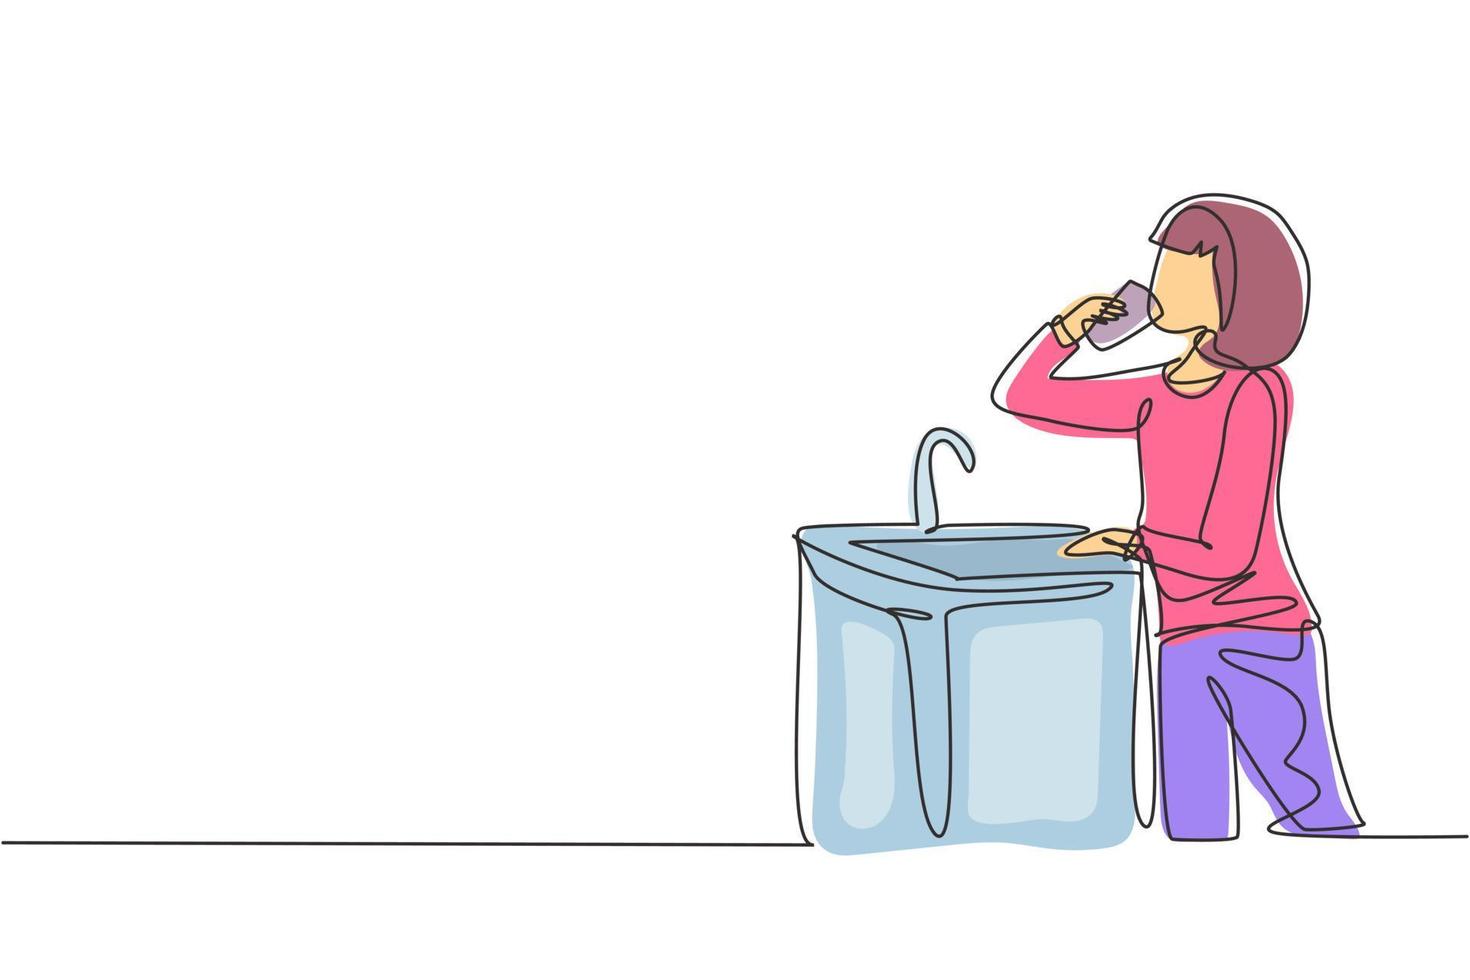 desenho de linha única garota bebendo água da torneira pronta para beber. sede e desidratação devido ao calor durante o dia. novo momento. ilustração em vetor gráfico design moderno linha contínua